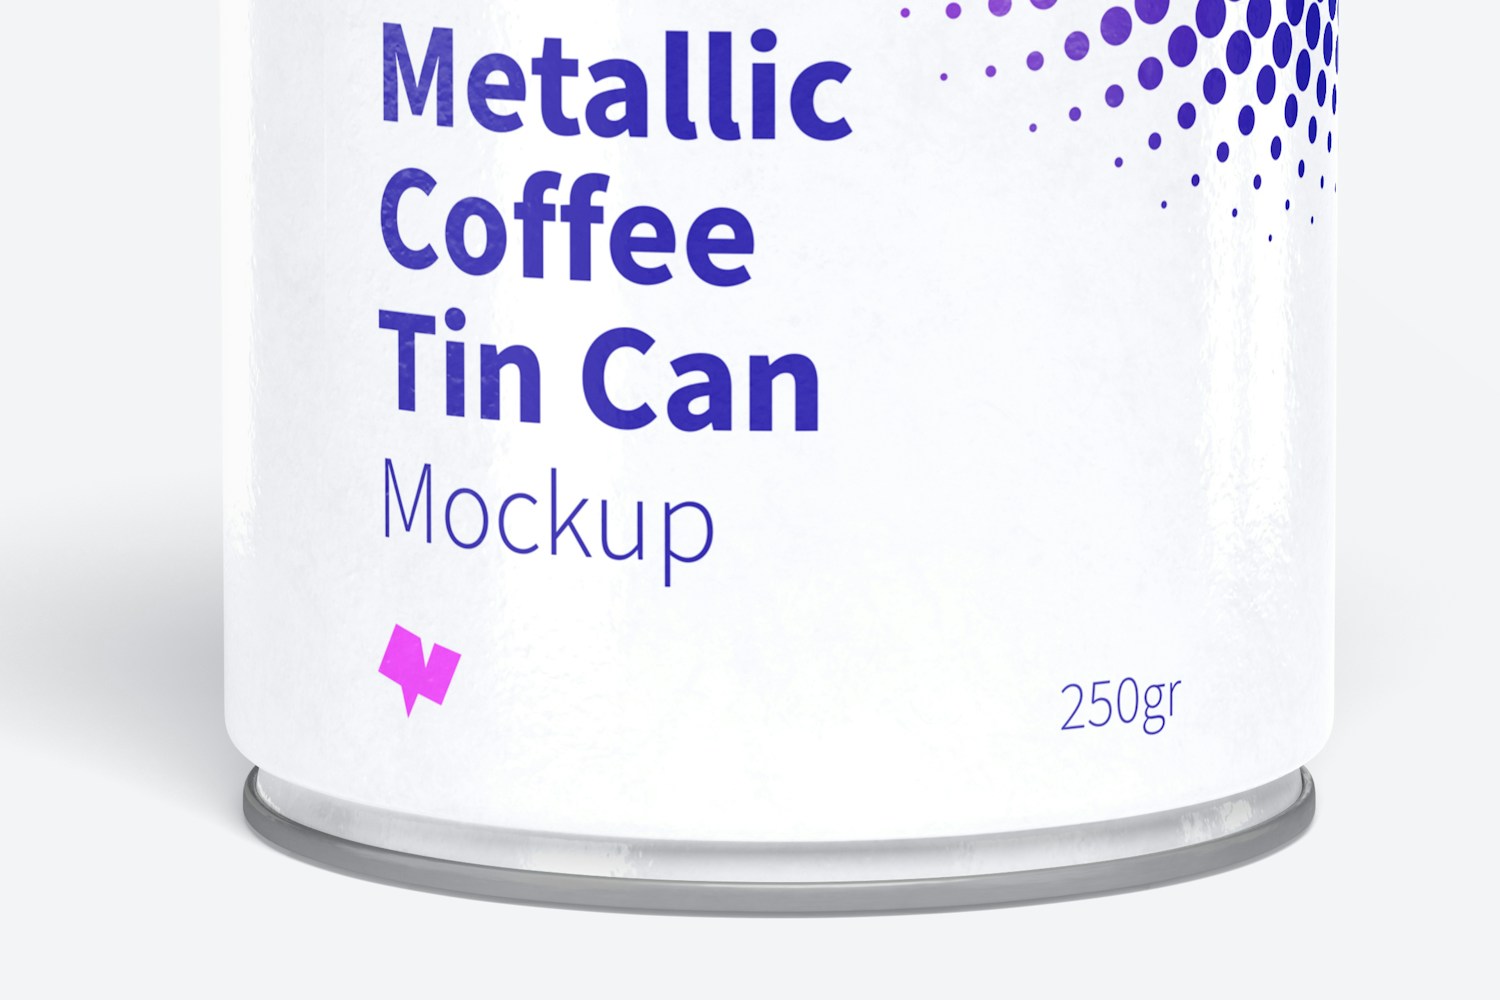 Metallic Coffee Tin Can with Plastic Lid Mockup